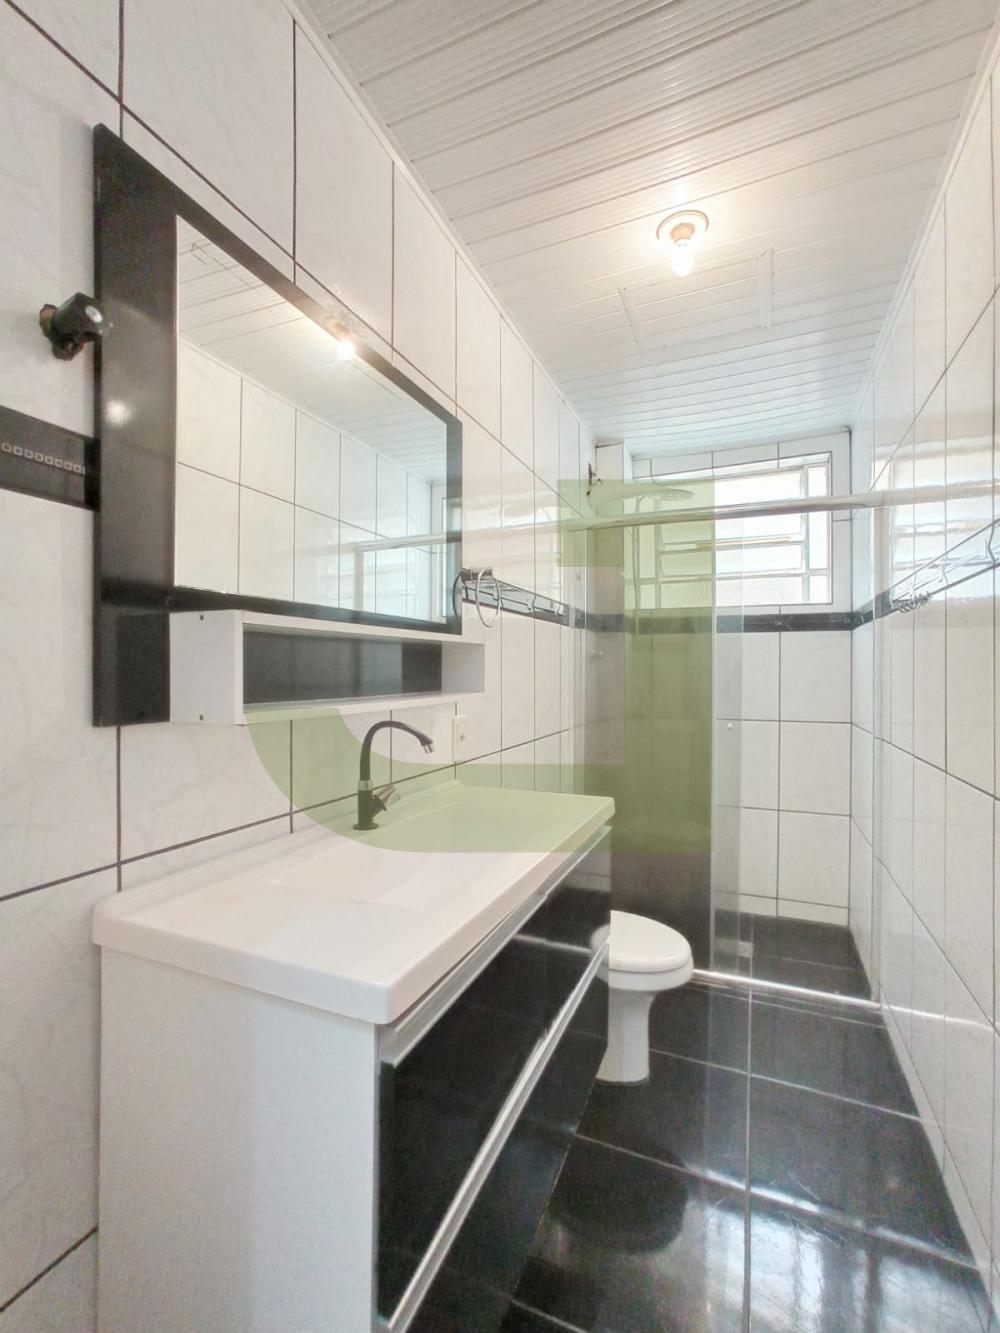 Alugar Apartamento / Padrão em São Leopoldo R$ 650,00 - Foto 2